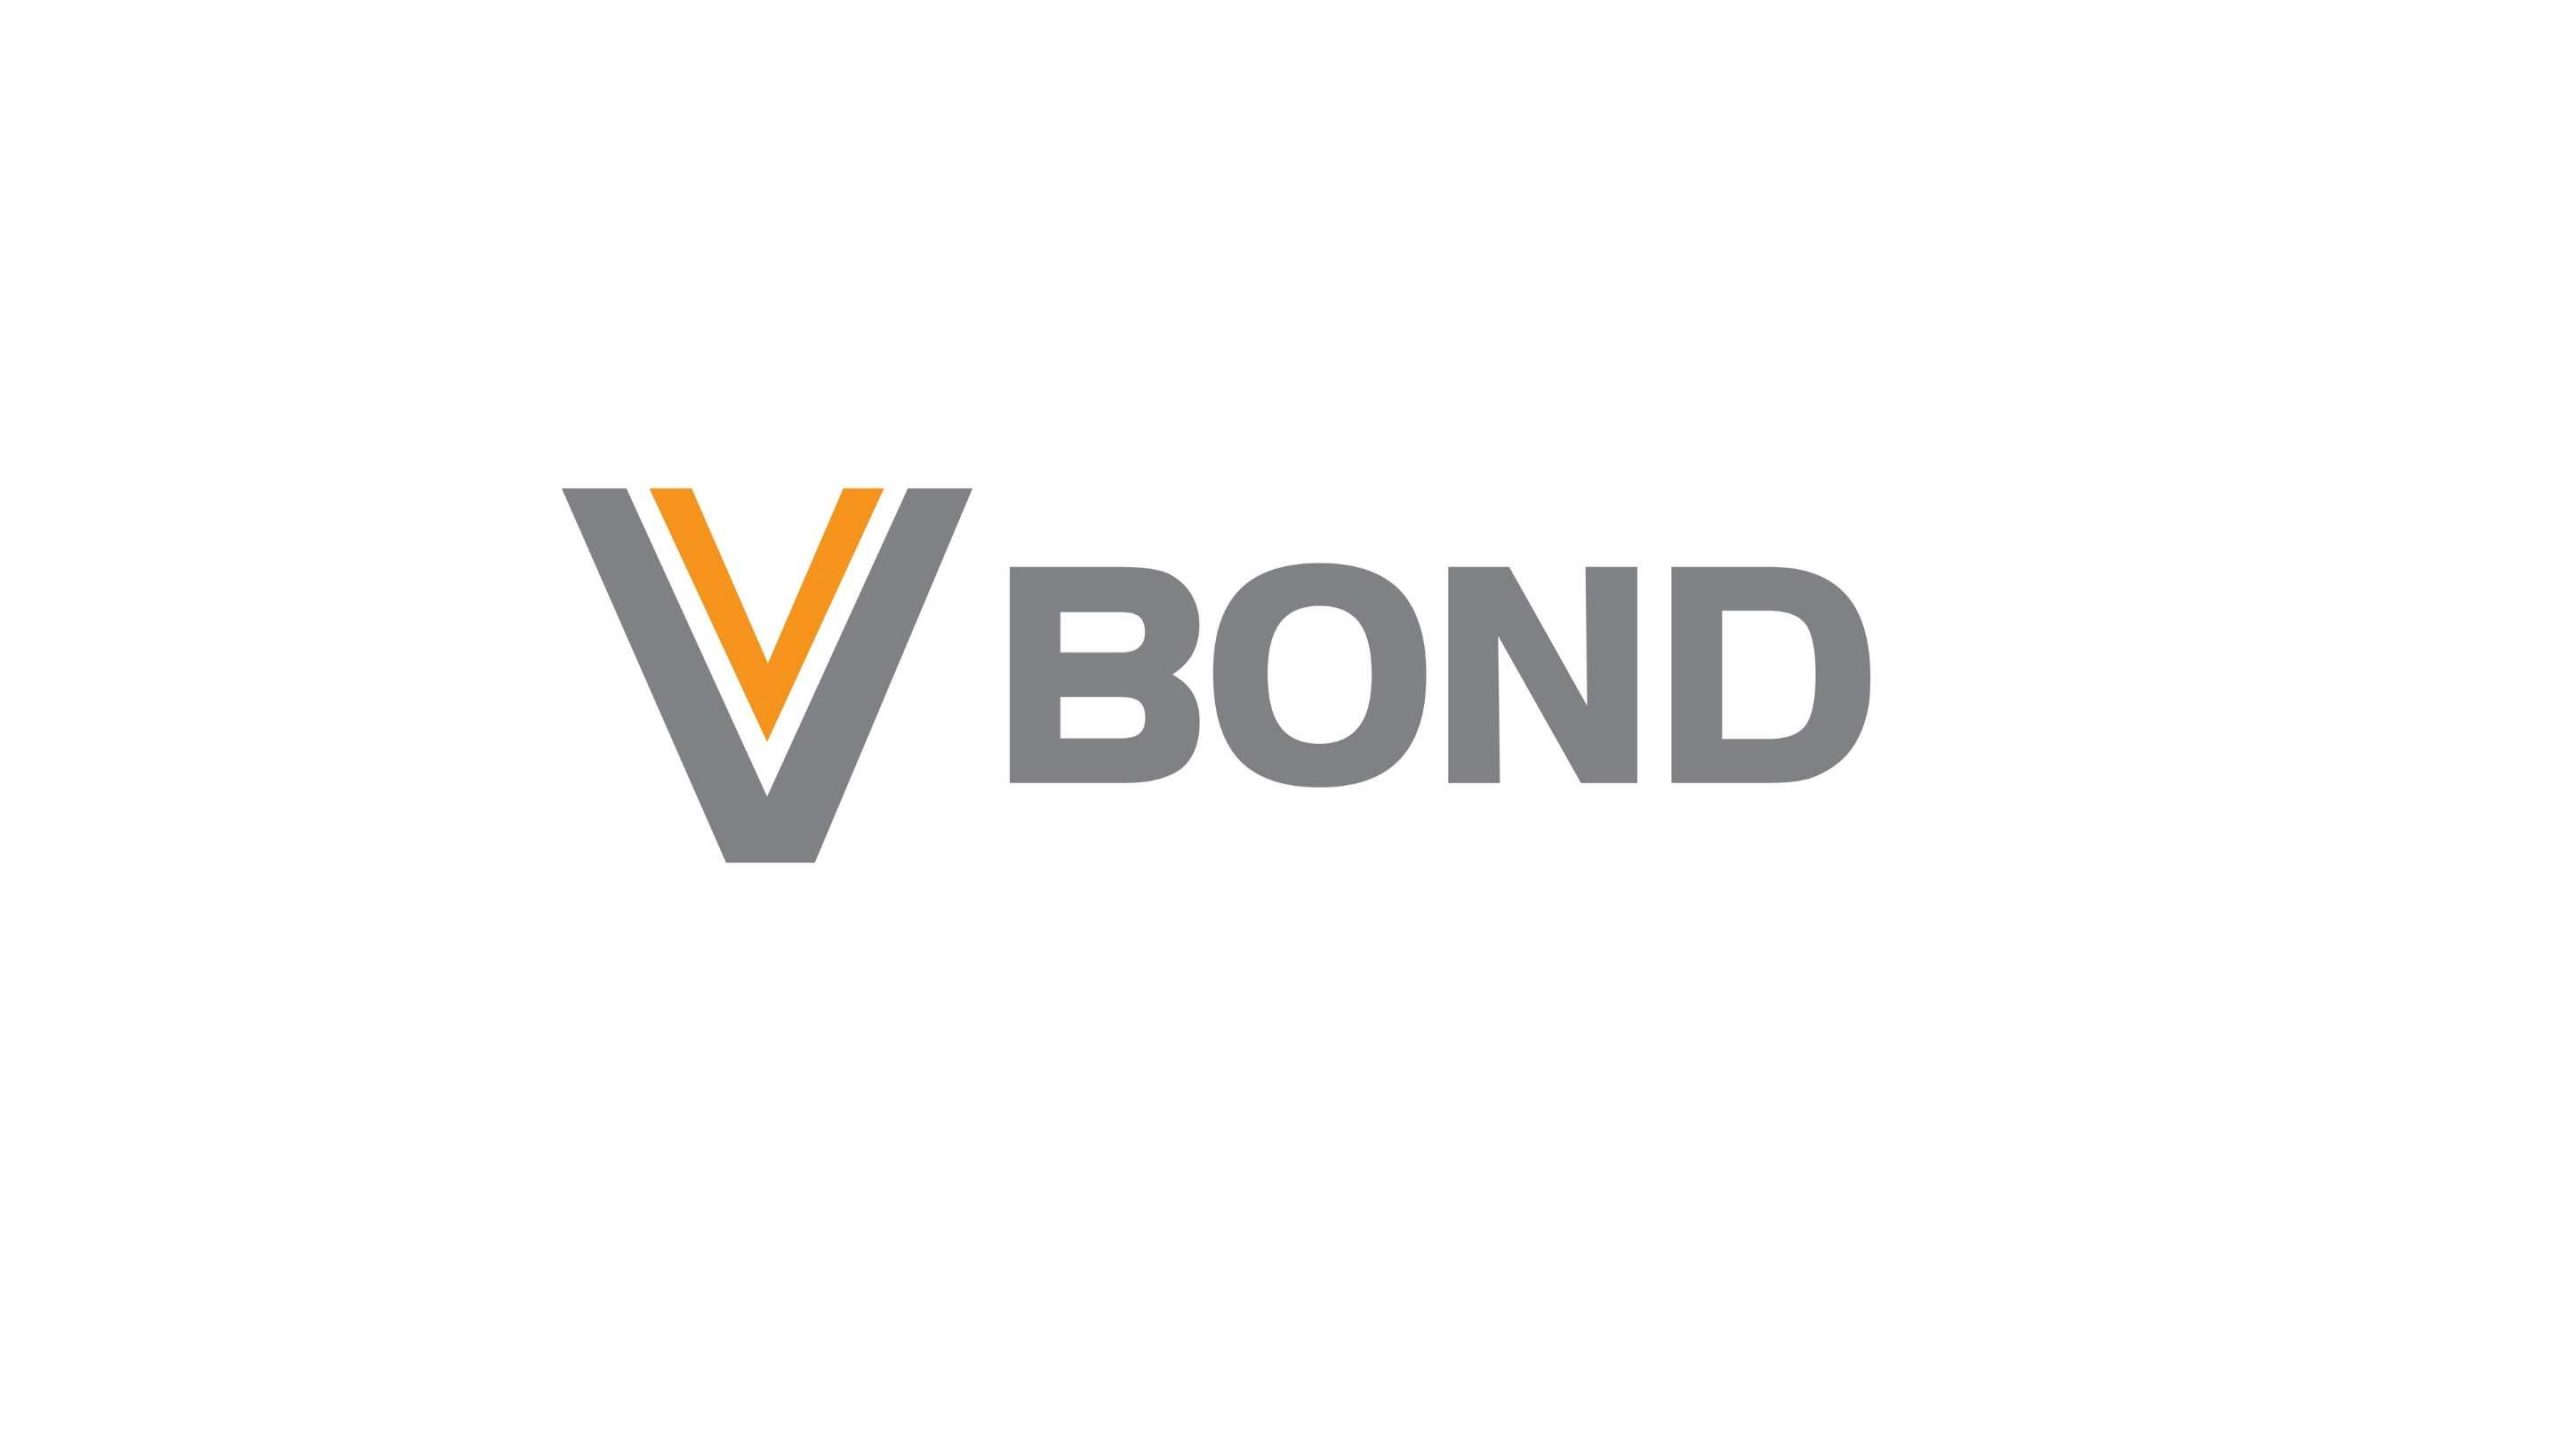 Tìm hiểu trái phiếu vbond là gì và lợi thế khi đầu tư vào trái phiếu VBond